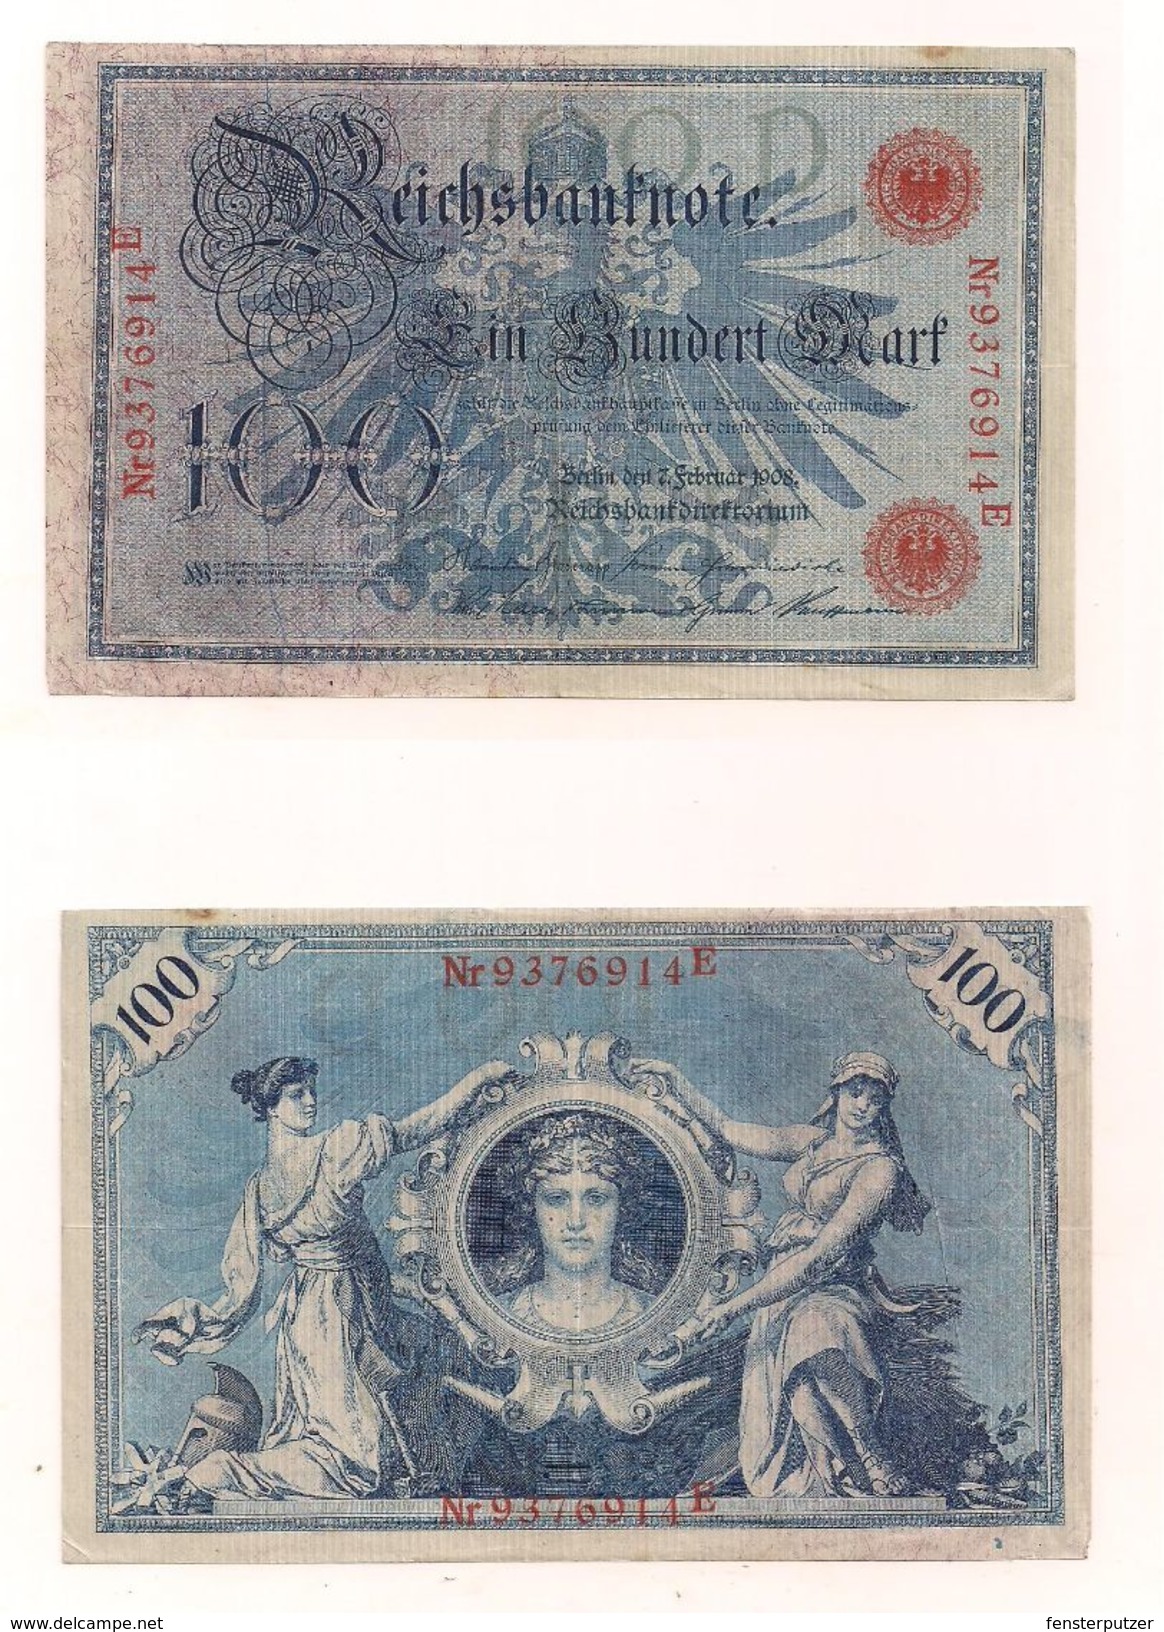 1 Gebrauchte Banknote Laut Abbildung 100 Mark 7.2.1908 Rote Serie, Halb Blasser Adler - 100 Mark